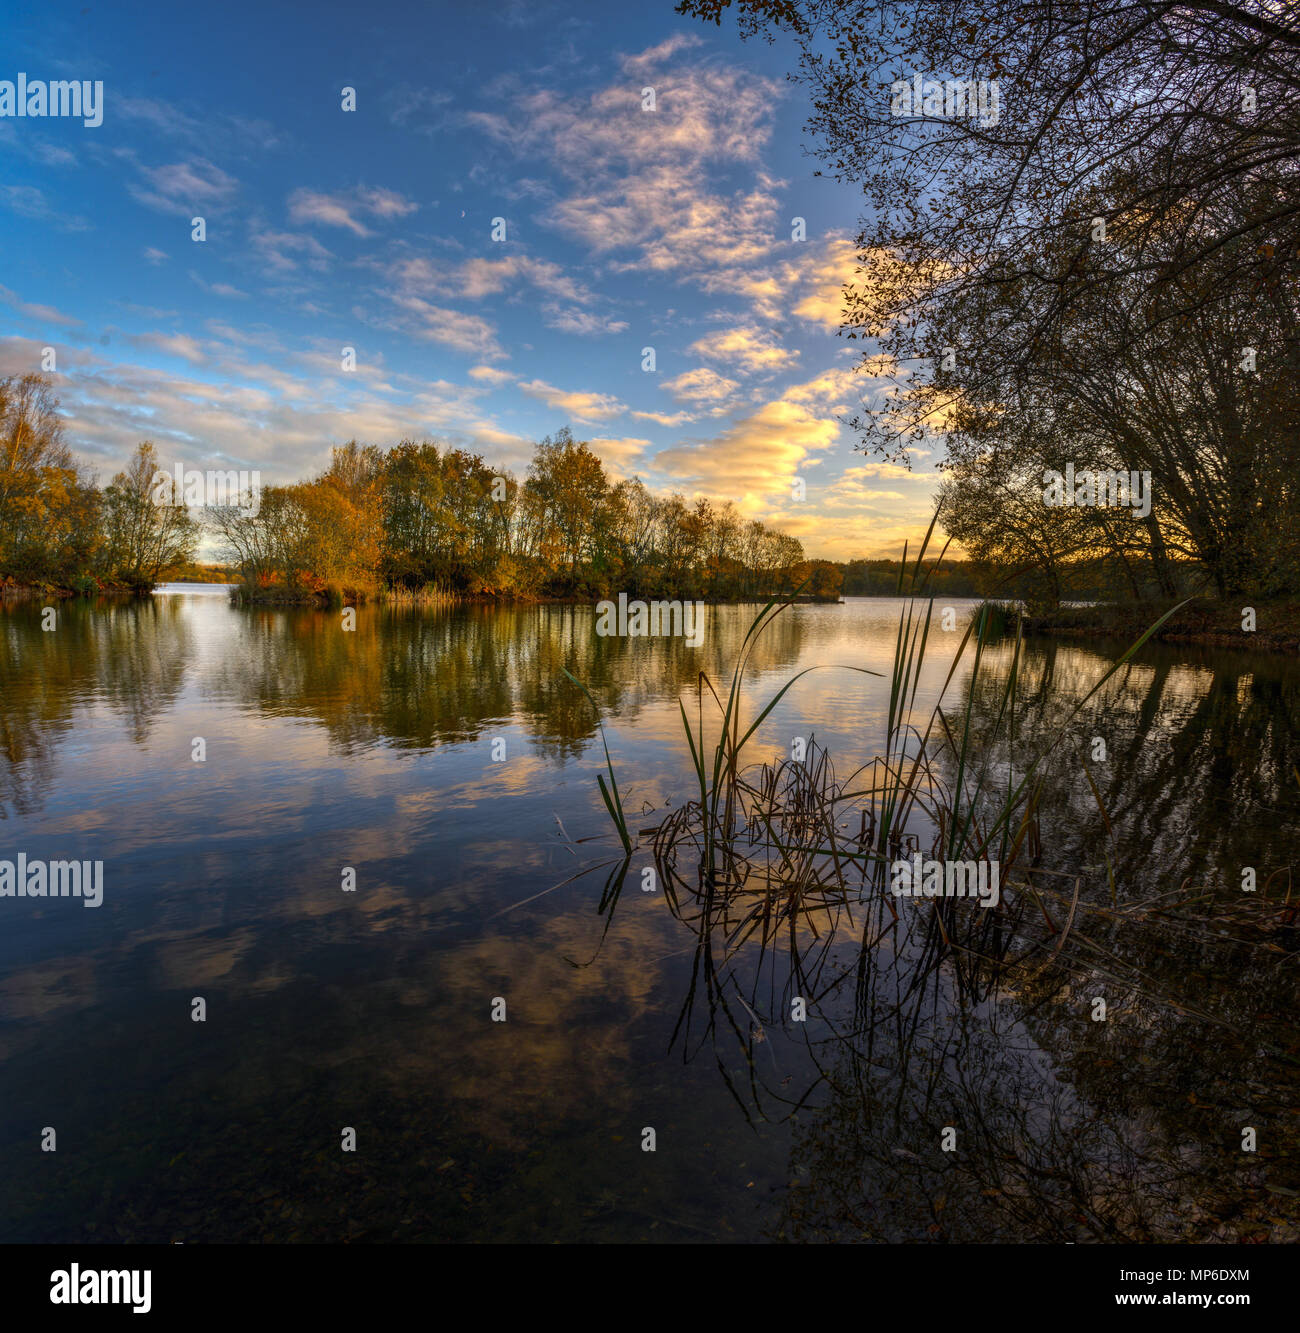 Tranquila tarde de otoño a la orilla del lago, riocaldo, Begonte Stock Photo